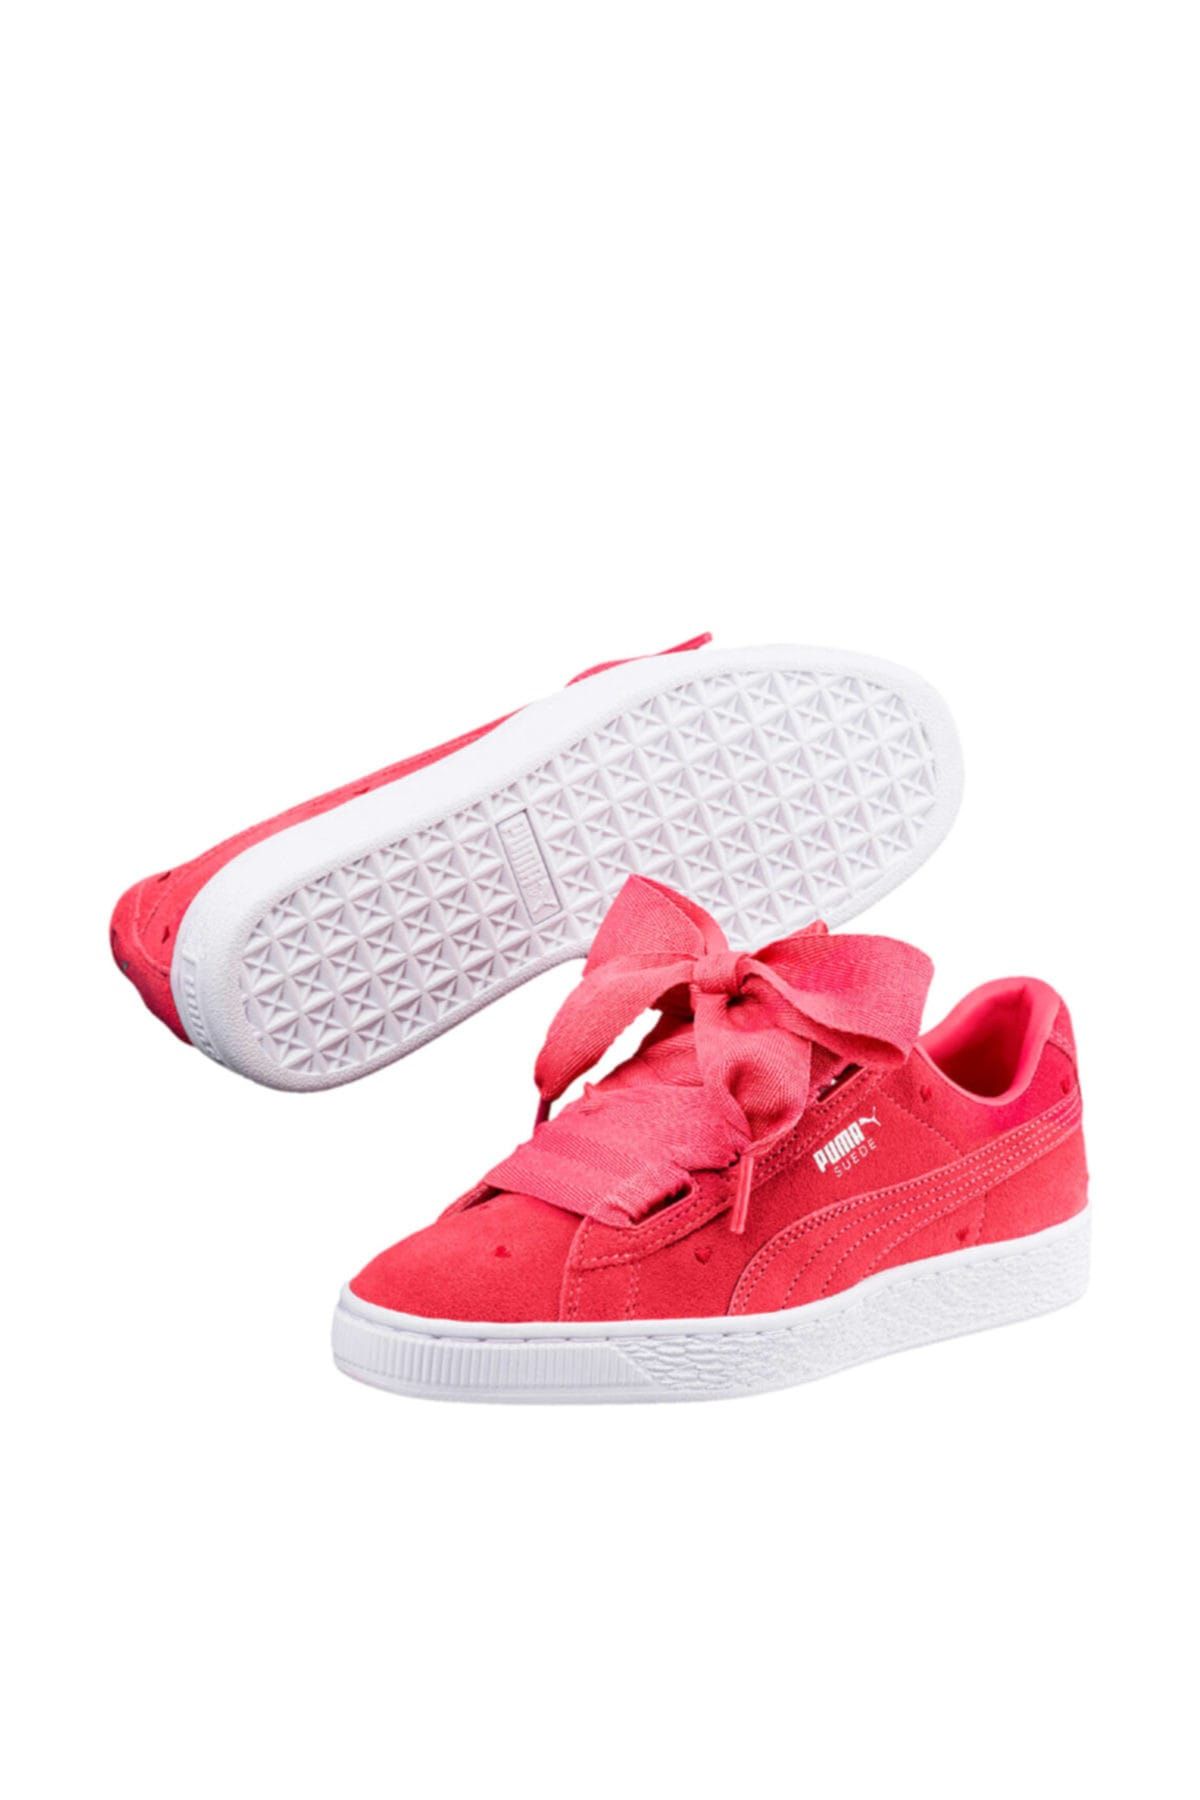 Puma Suede Heart Valentine Jr Kırmızı Kız Çocuk Sneaker Ayakkabı 100398812